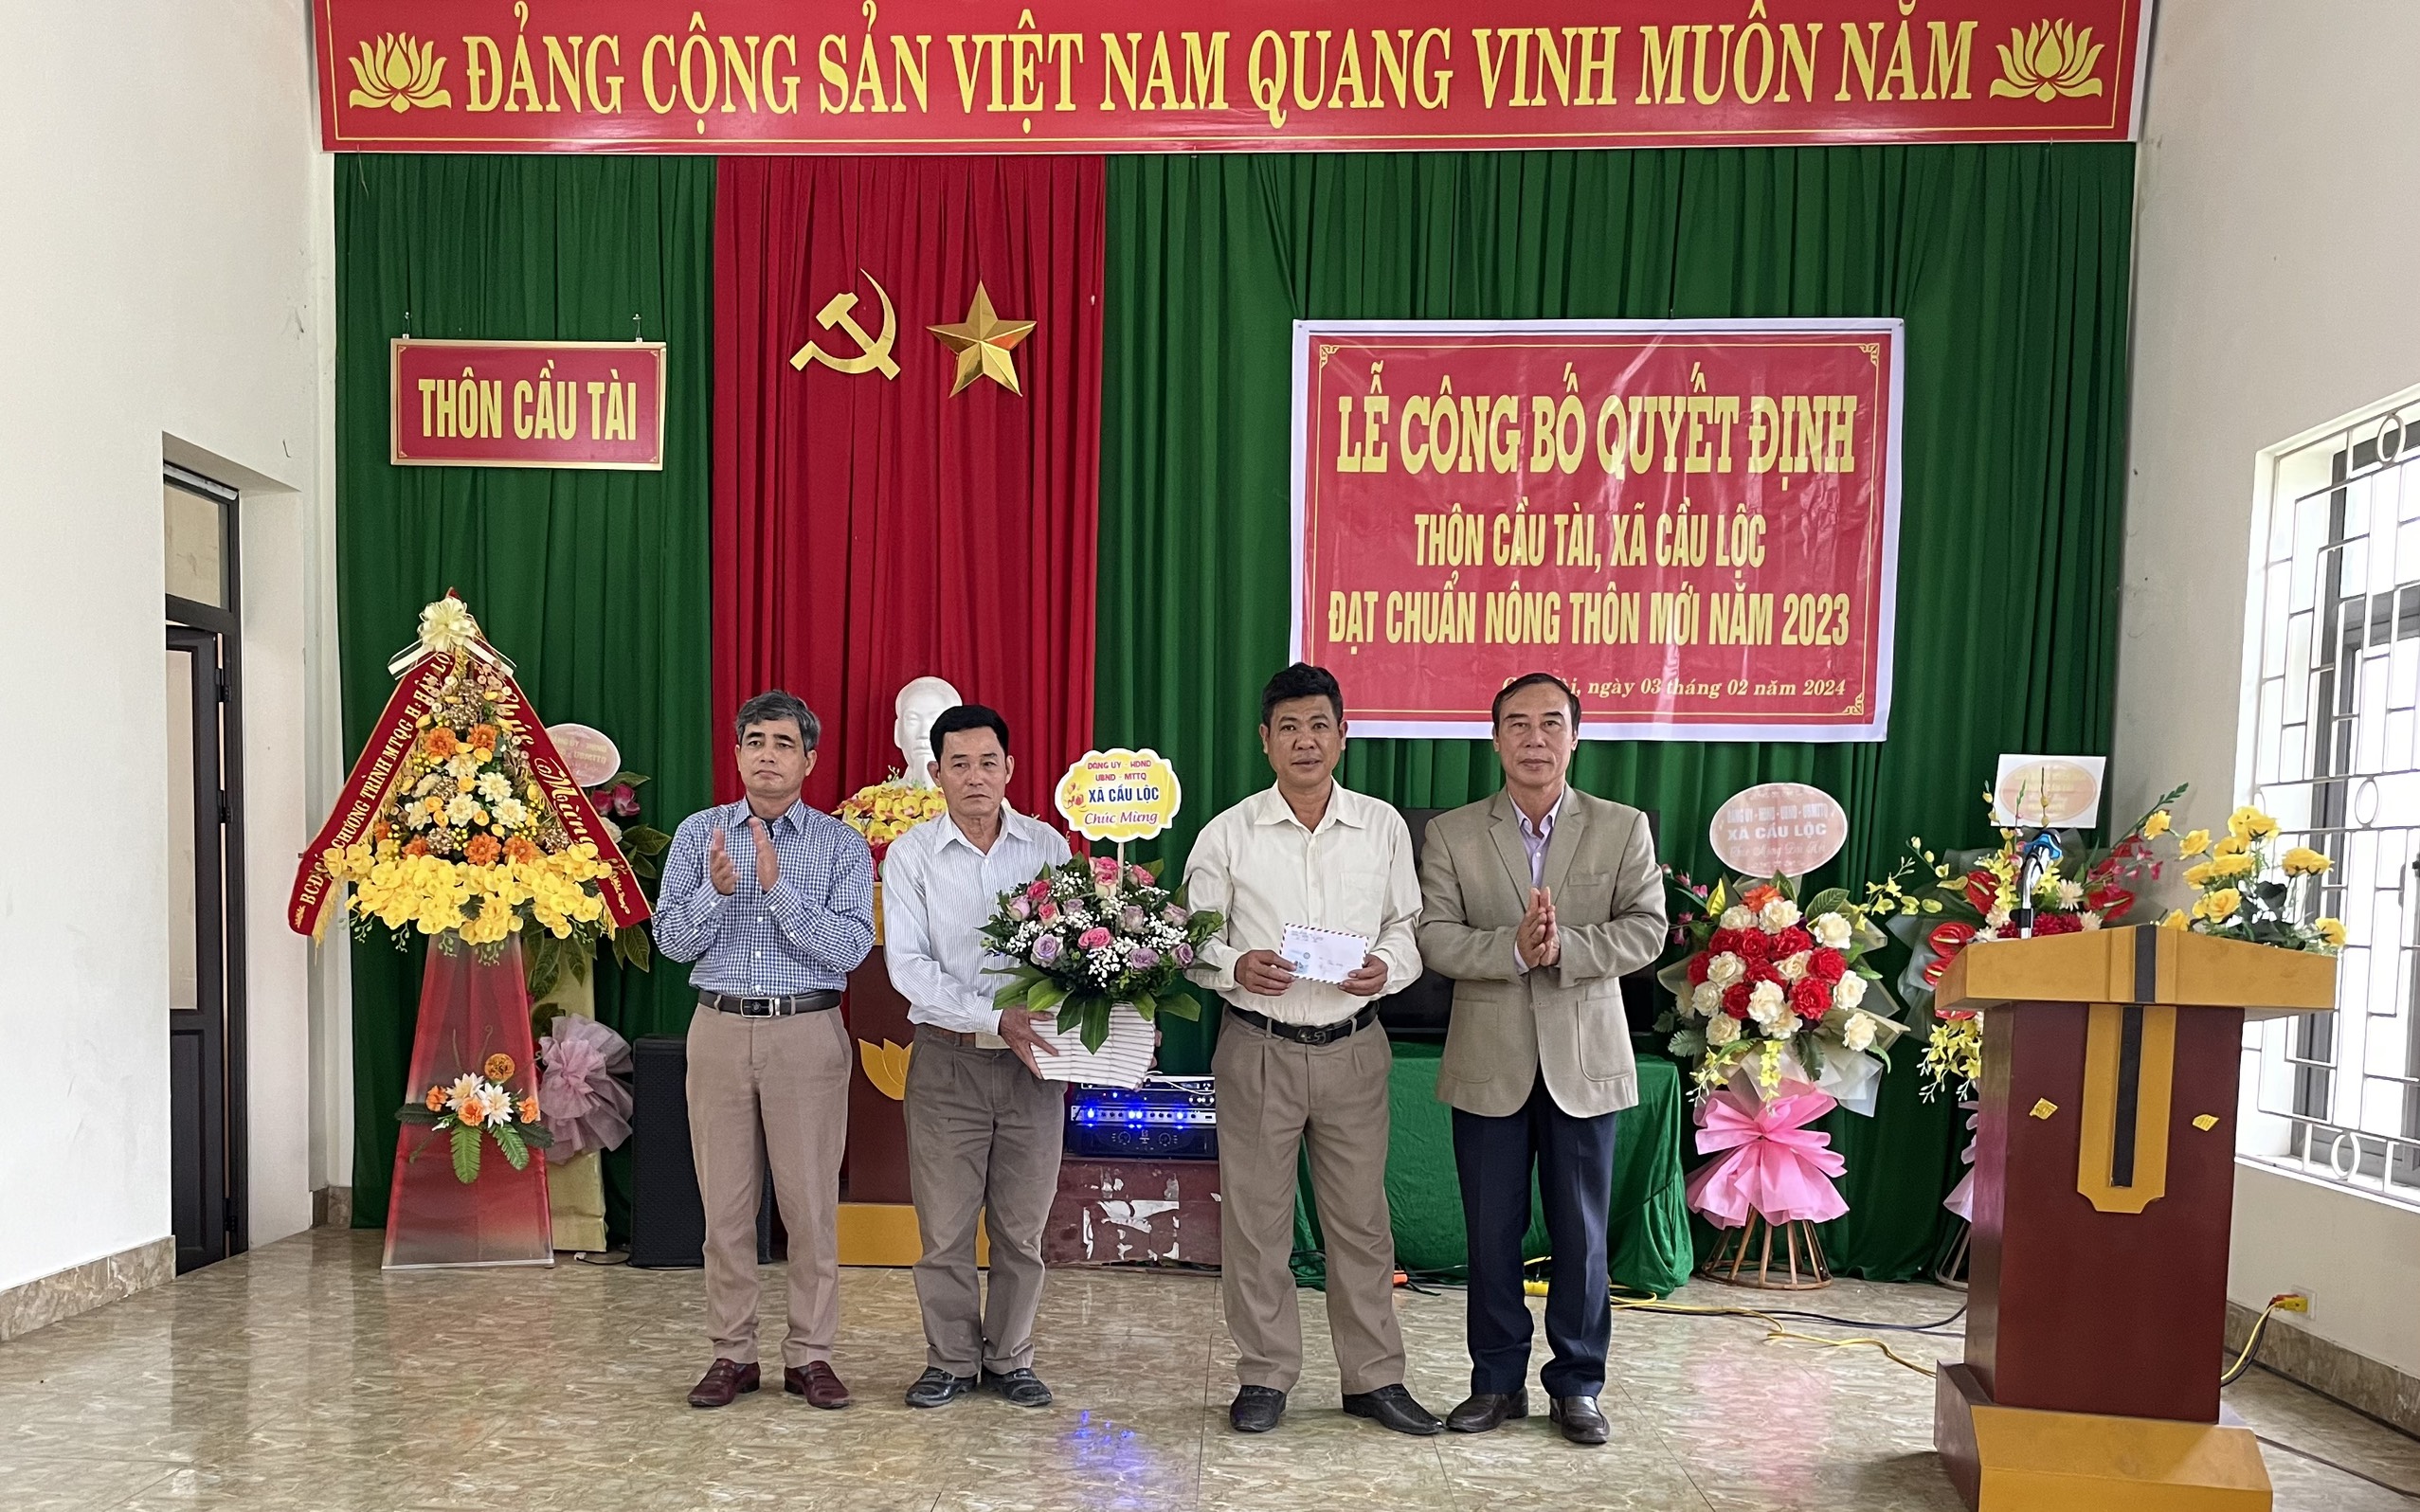 Thôn Cầu Tài, xã Cầu Lộc, huyện Hậu Lộc tổ chức Lễ công bố thôn đạt chuẩn nông thôn mới năm 2023